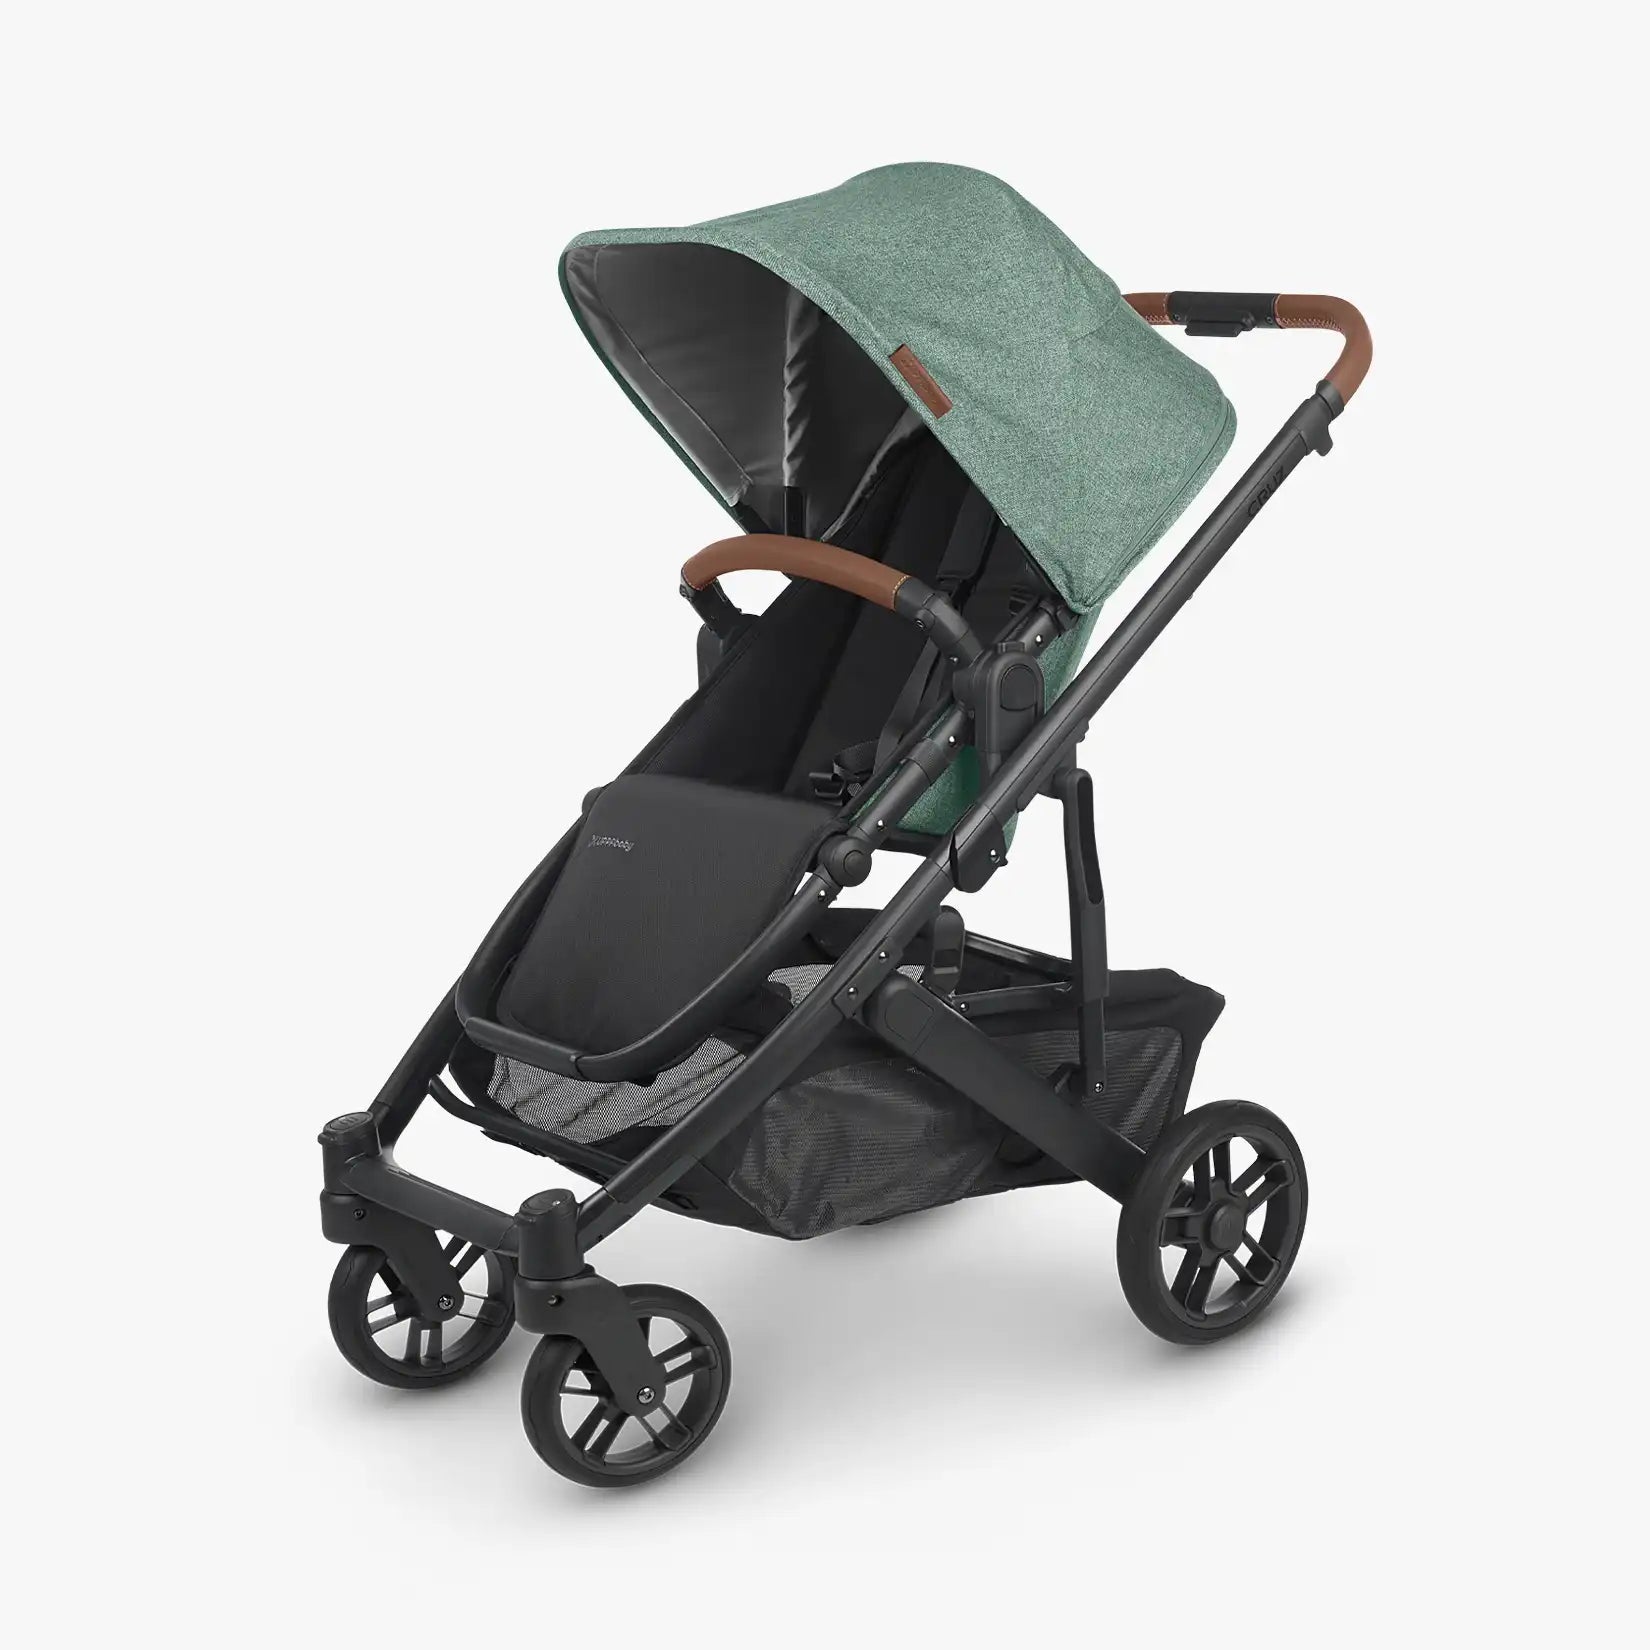 UPPAbaby CRUZ V2 Stroller - ANB Baby -810030096382$500 - $1000